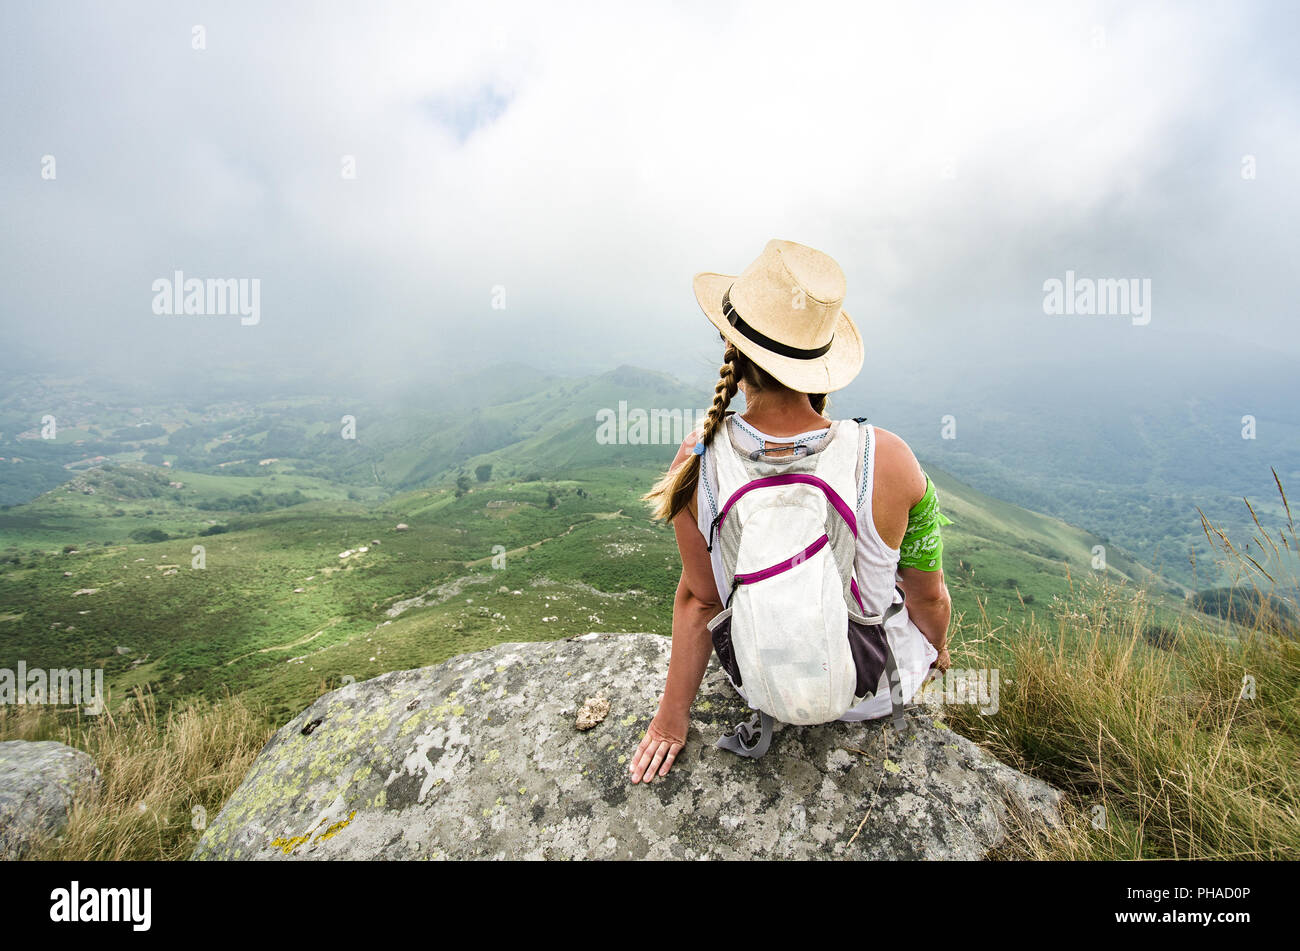 Travel concept : jeune fille de touriste avec un sac à dos assise sur le bord d'une falaise. Copier l'espace. Banque D'Images